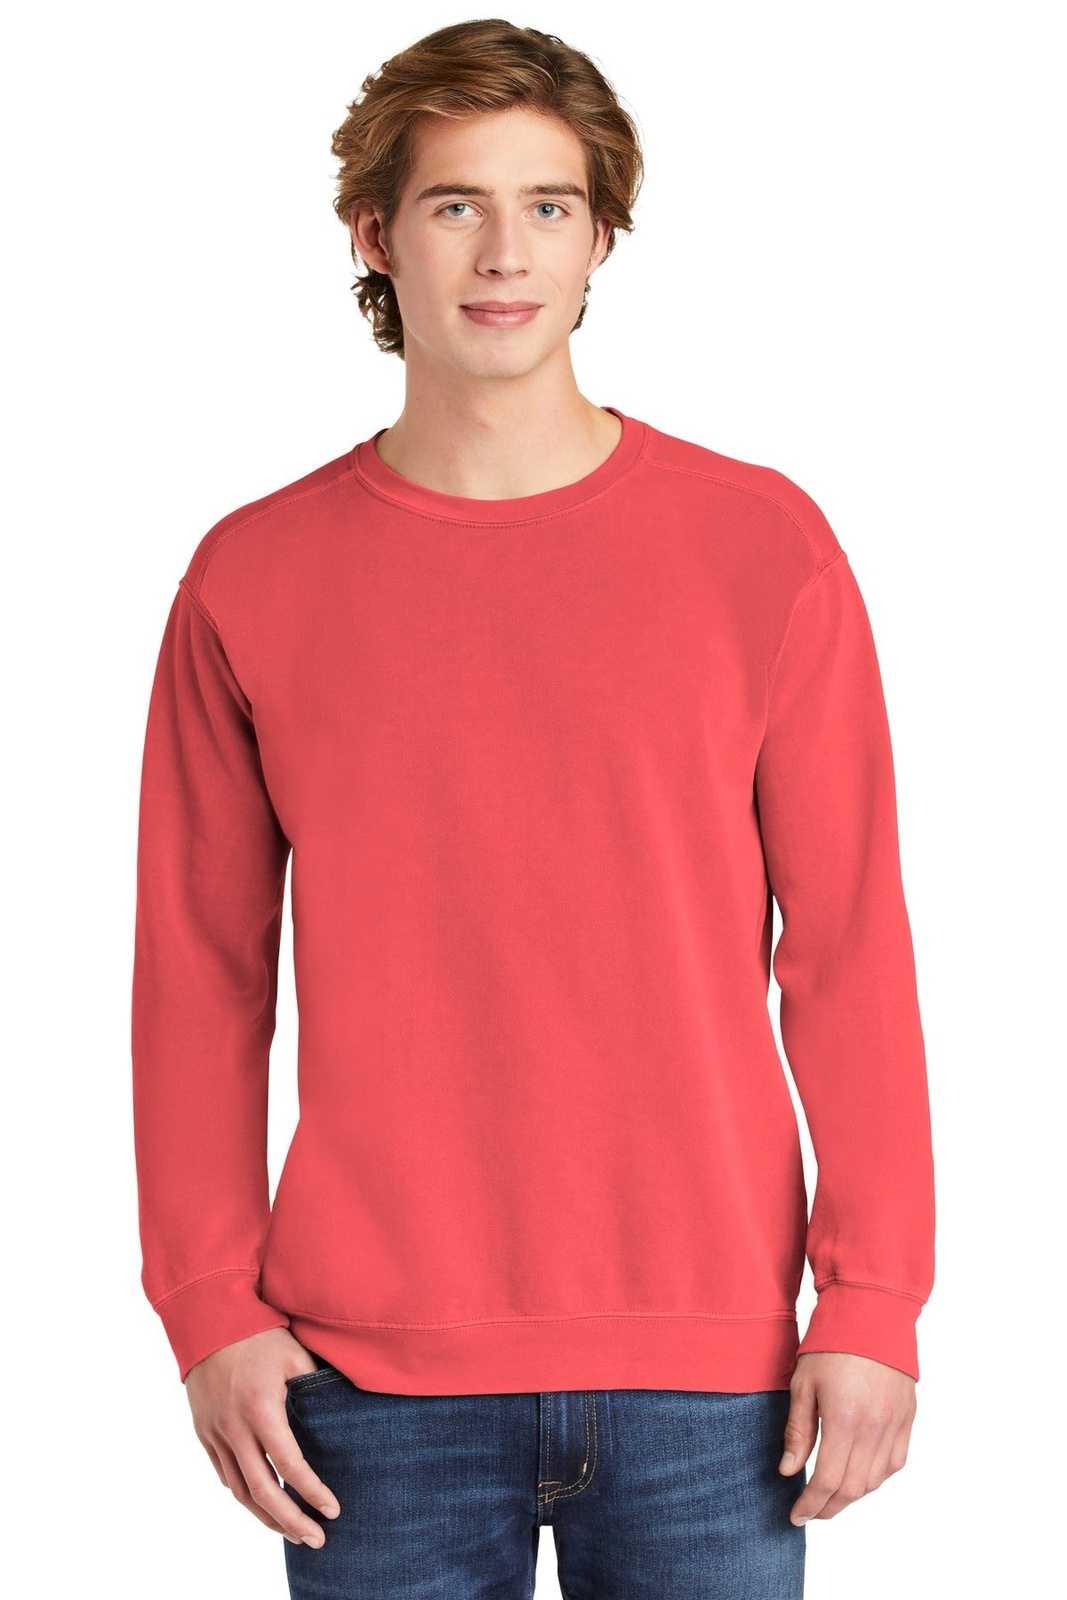 Comfort Colors 1566 Ring Spun Crewneck Sweatshirt - Watermelon - HIT a Double